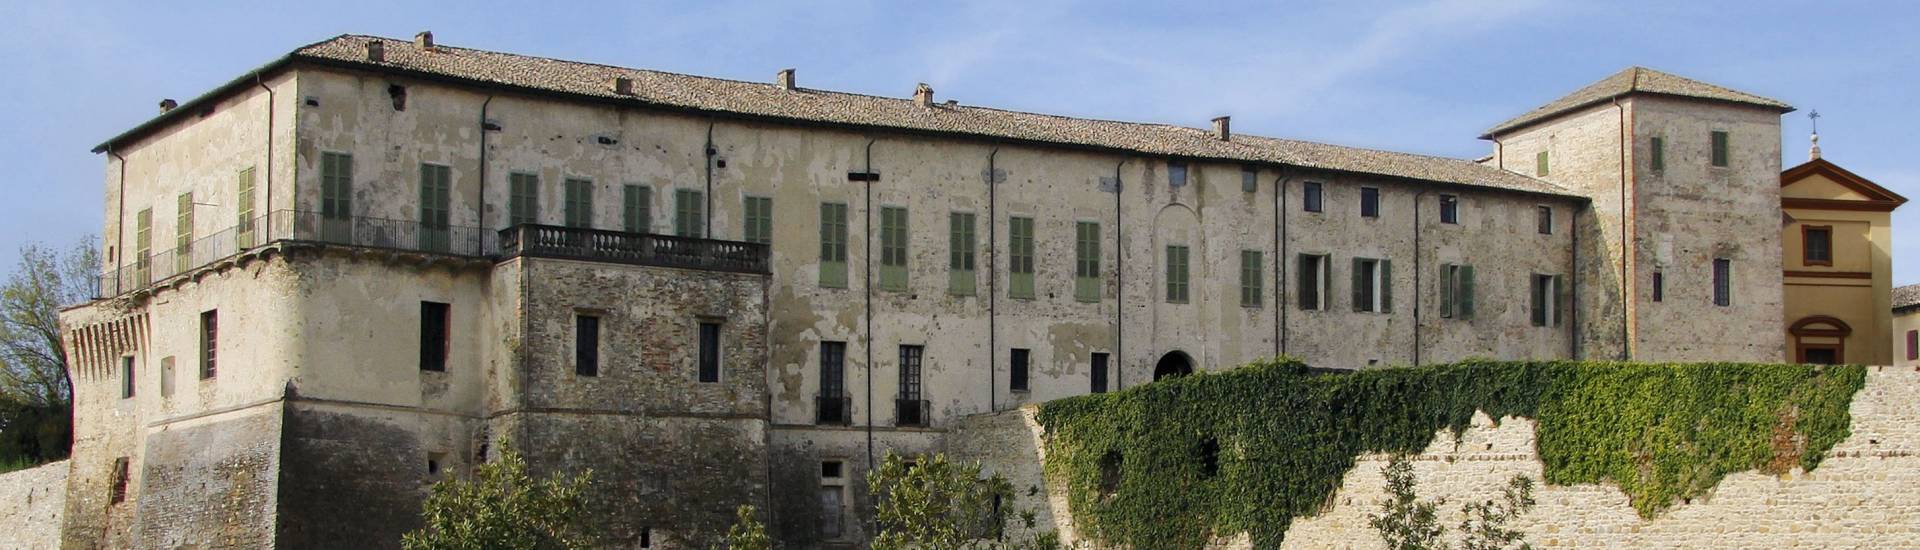 Rocca Sanvitale - Sanvitale Castle photo credits: |Gazzetta di Parma| - Libro "I Castelli del Parmense. Sala Baganza"